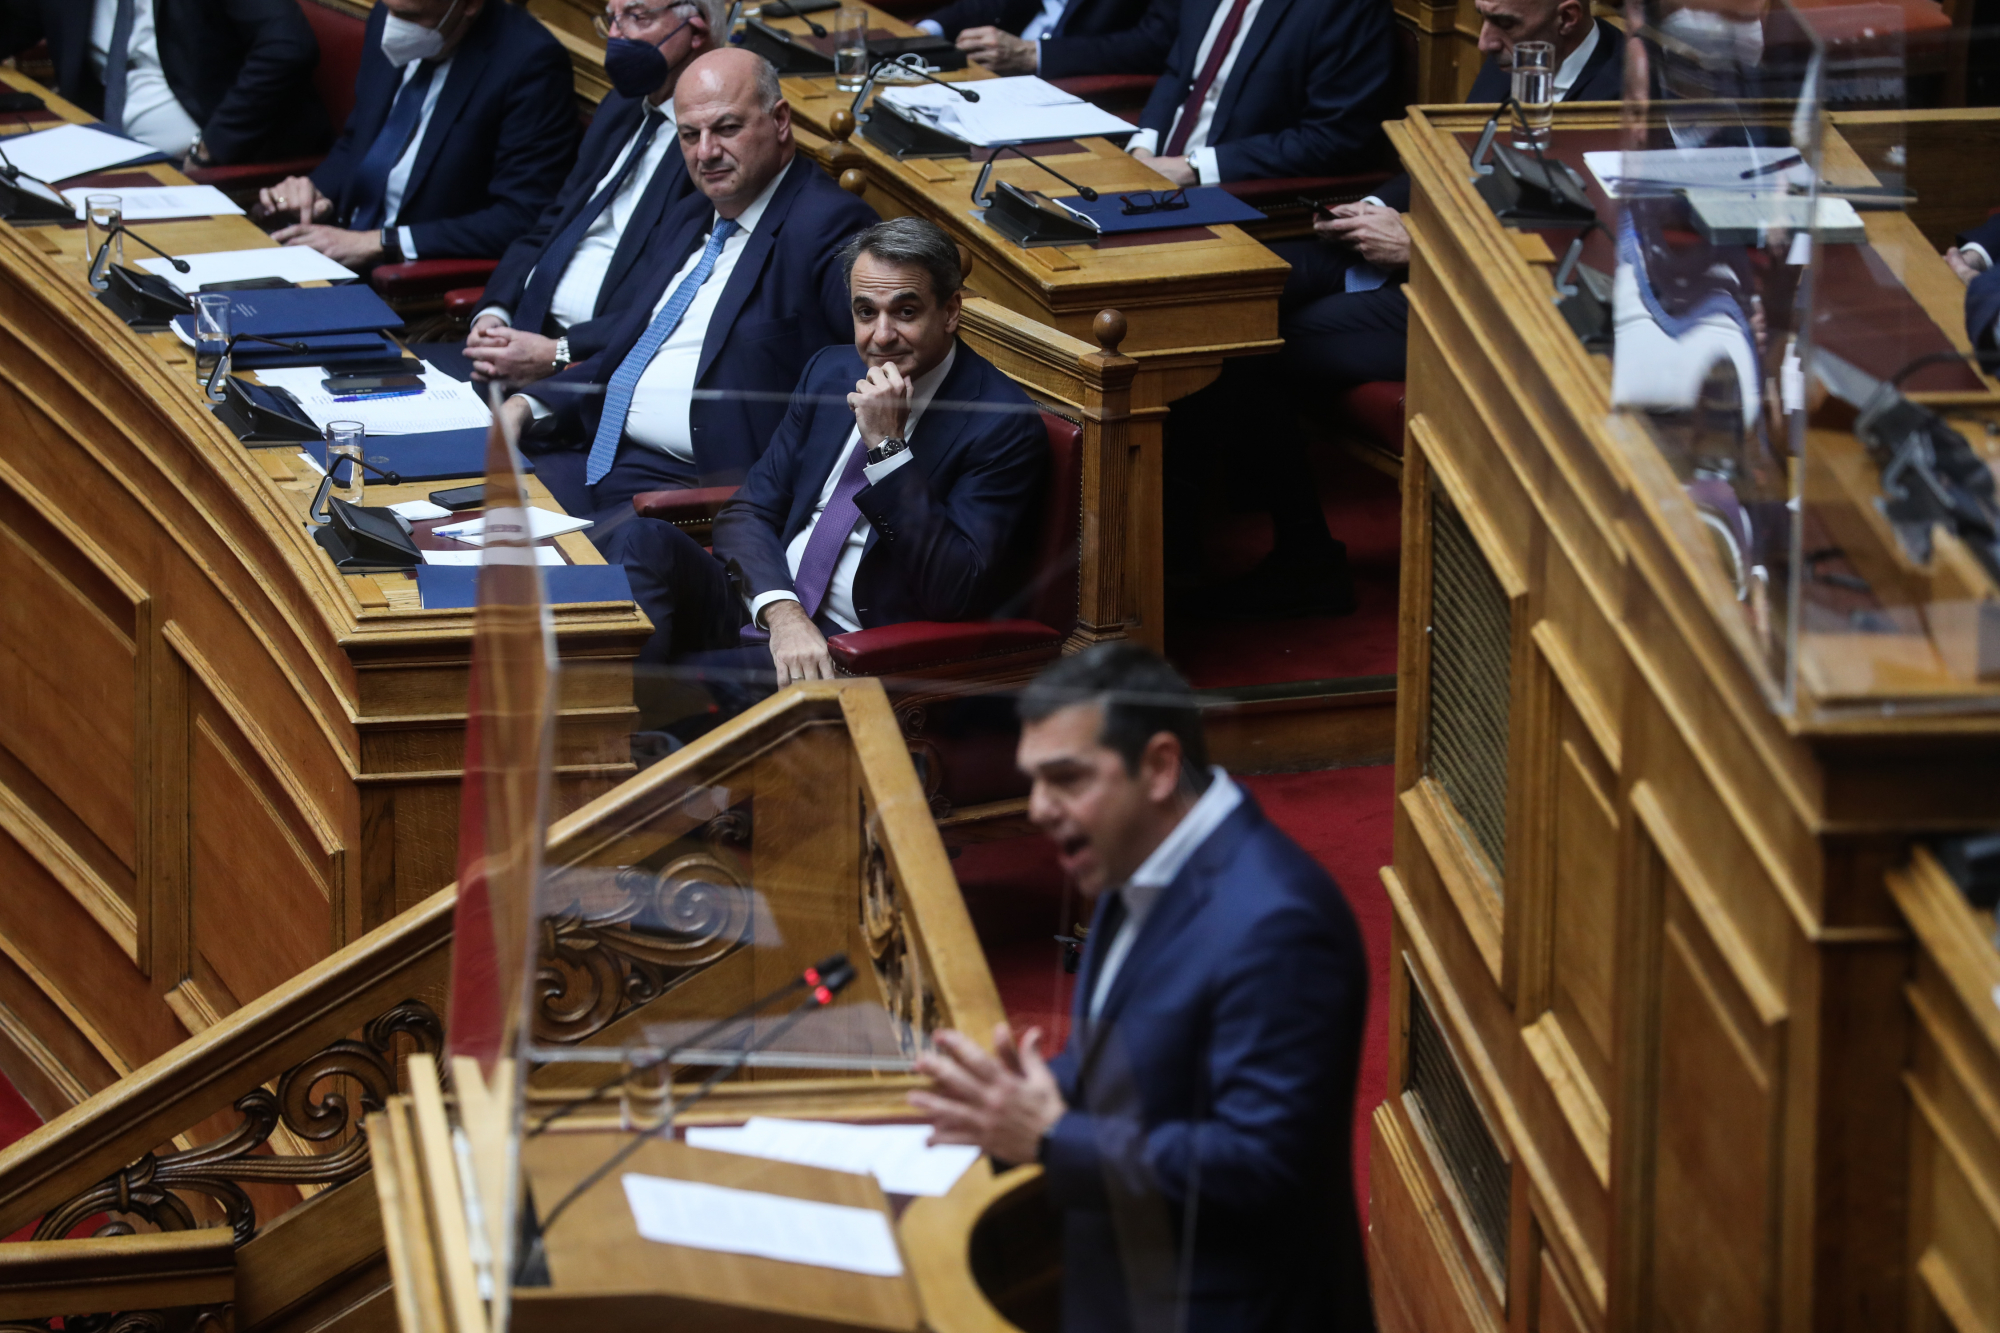 Υποκλοπές: Χαμός στη Βουλή - Κόντρα Μητσοτάκη - Τσίπρα για το ποιος θα κλείσει τη συζήτηση